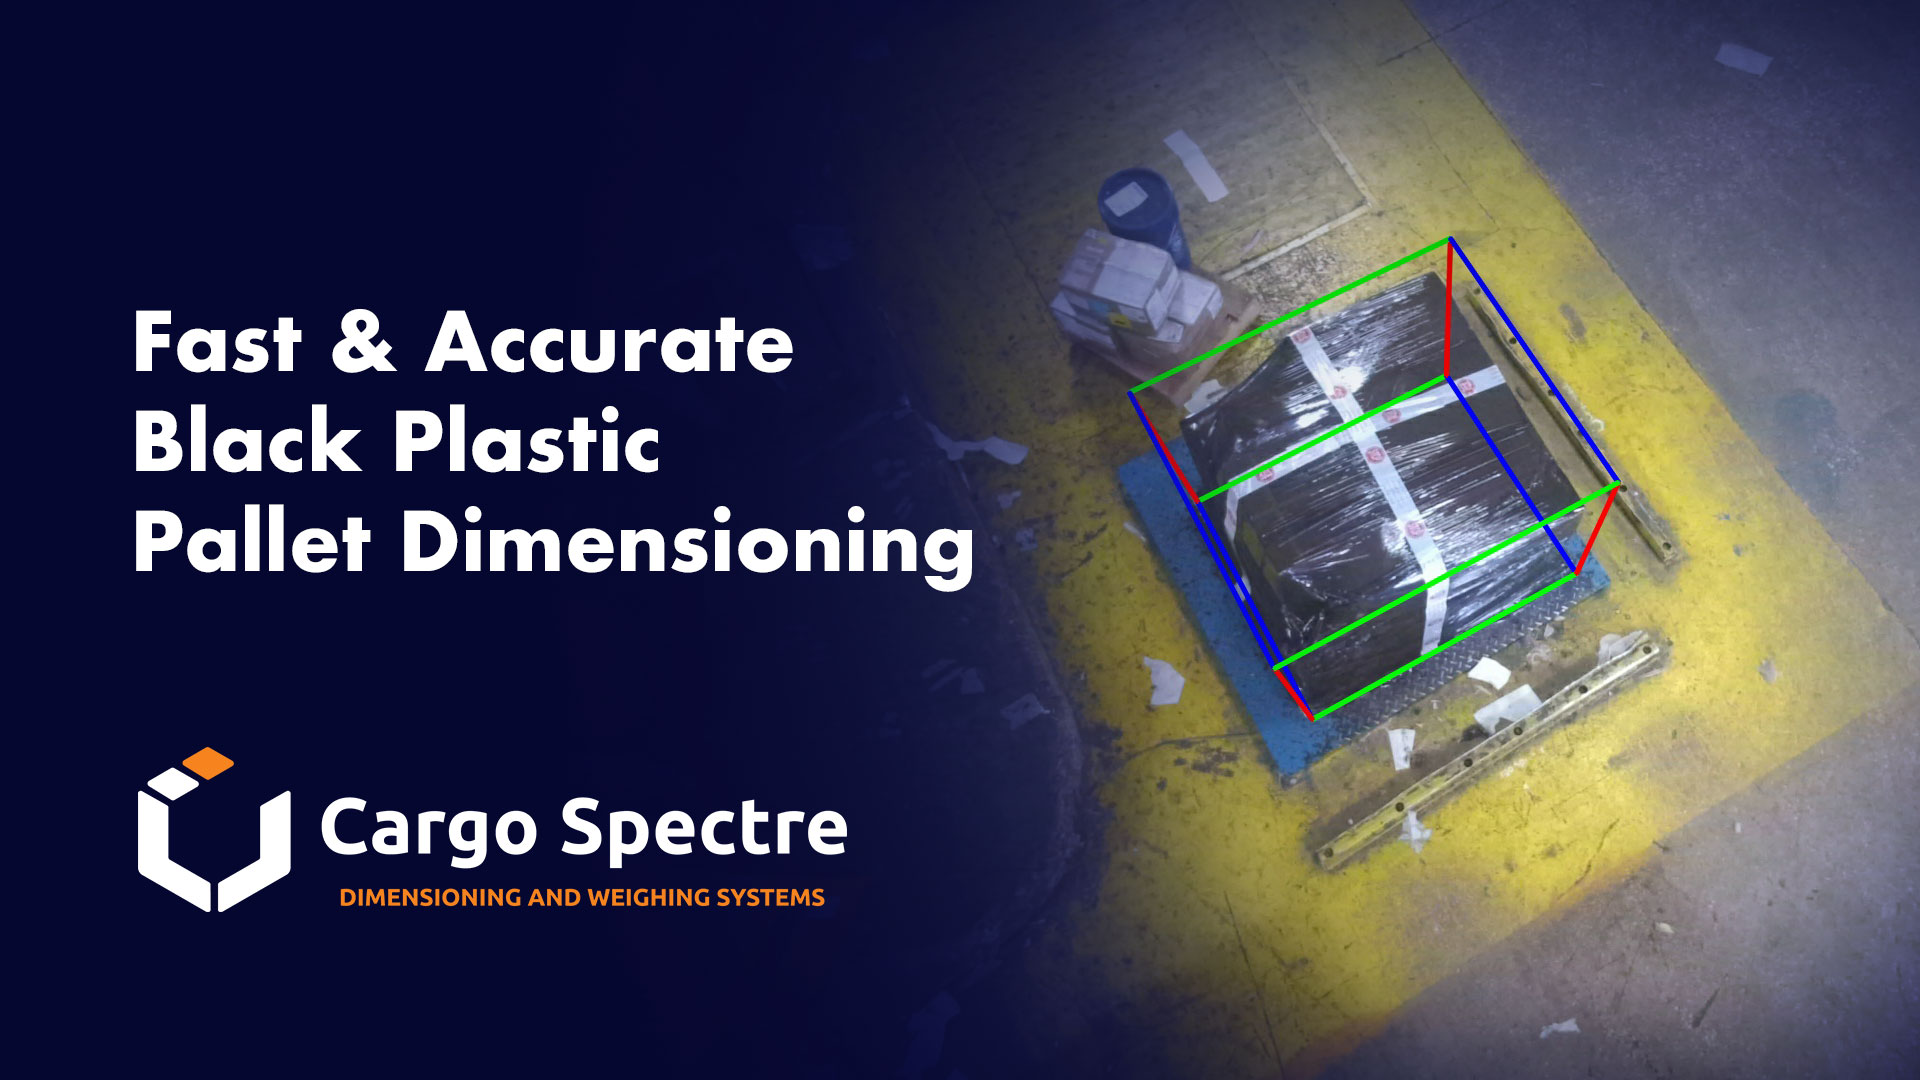 Cargo Spectre Black Plastic Dimensioning